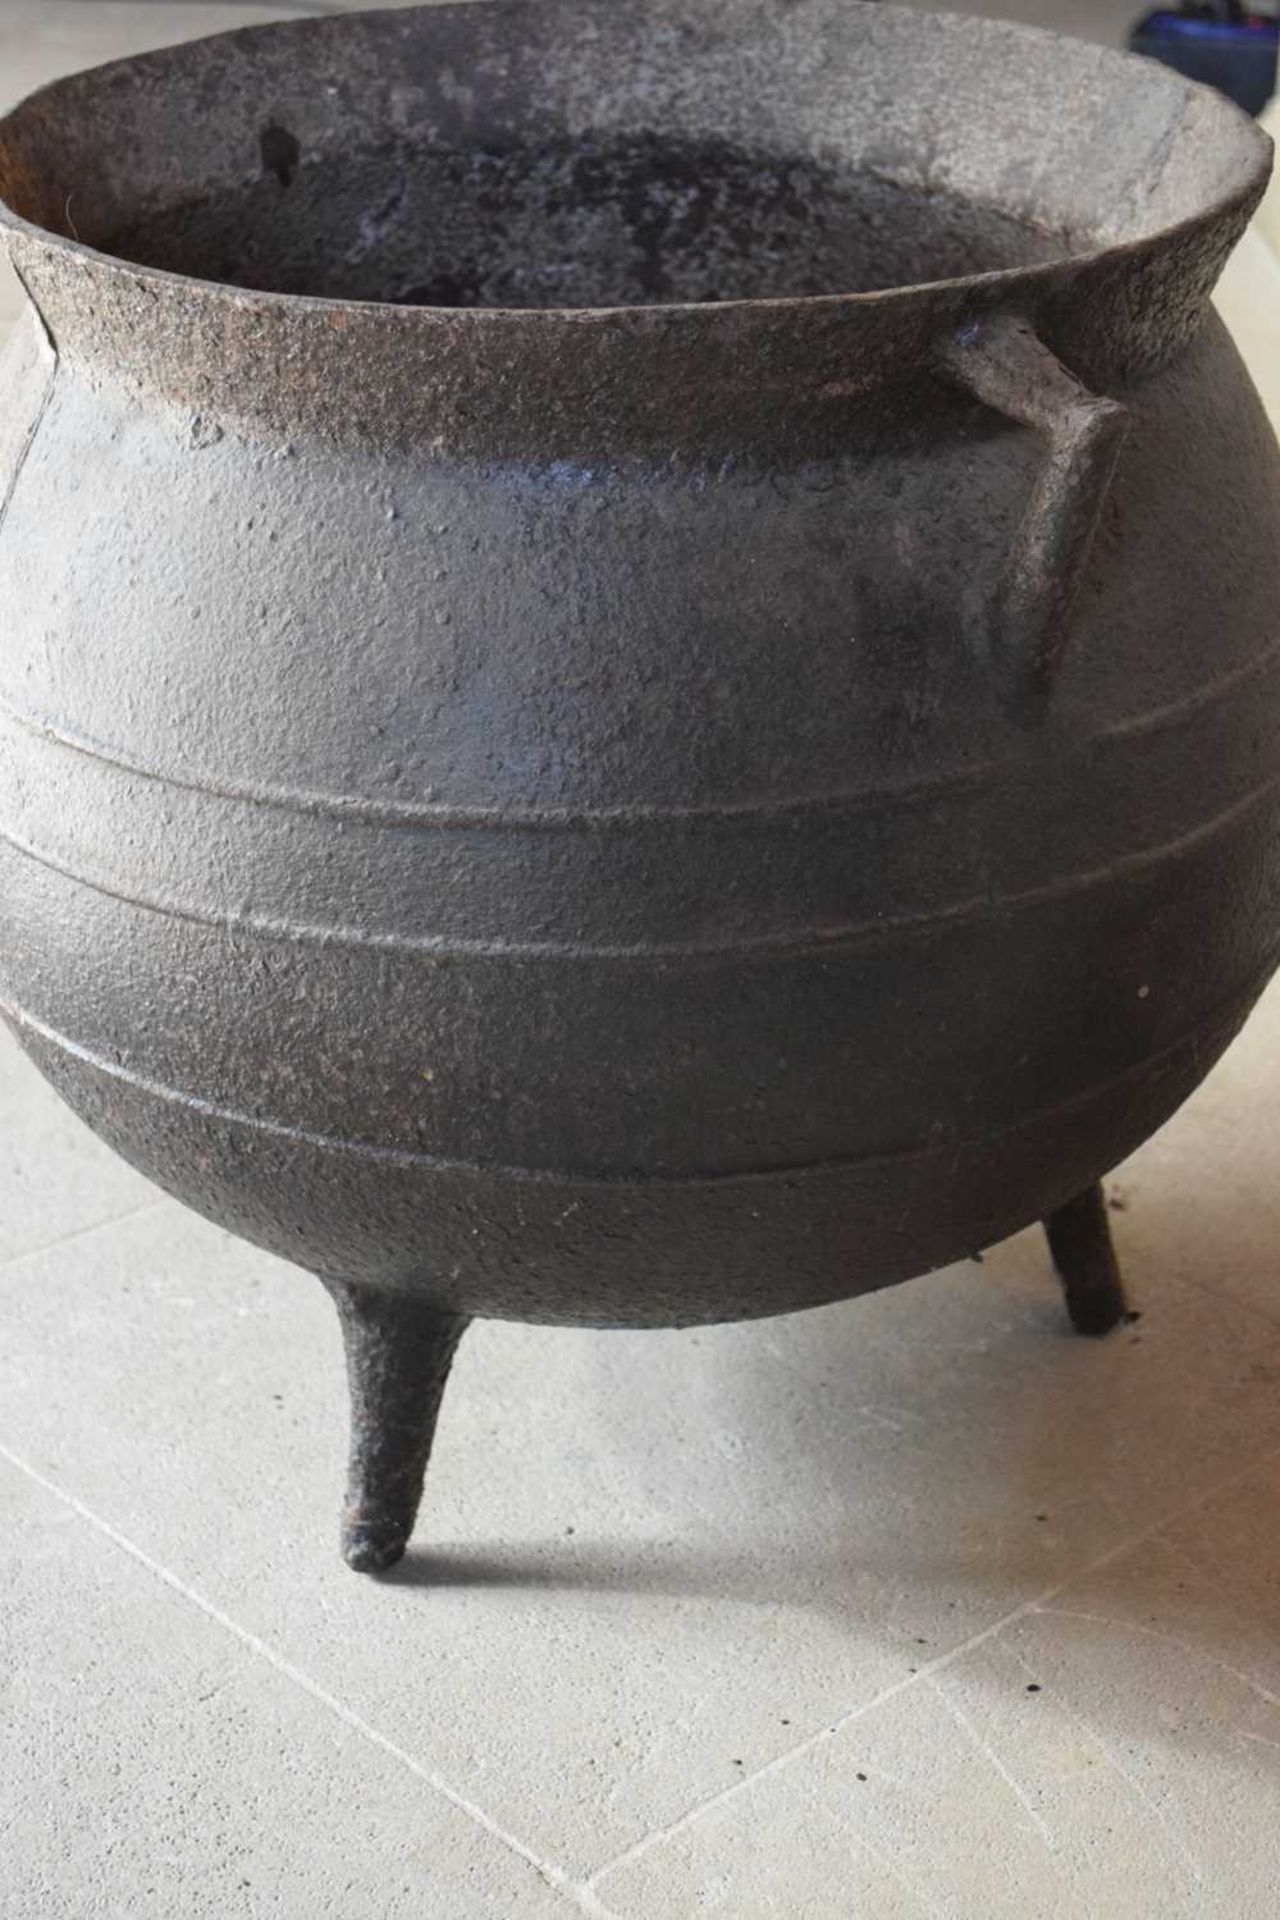 Coalbrookdale - 19th Century iron cauldron - Image 4 of 14